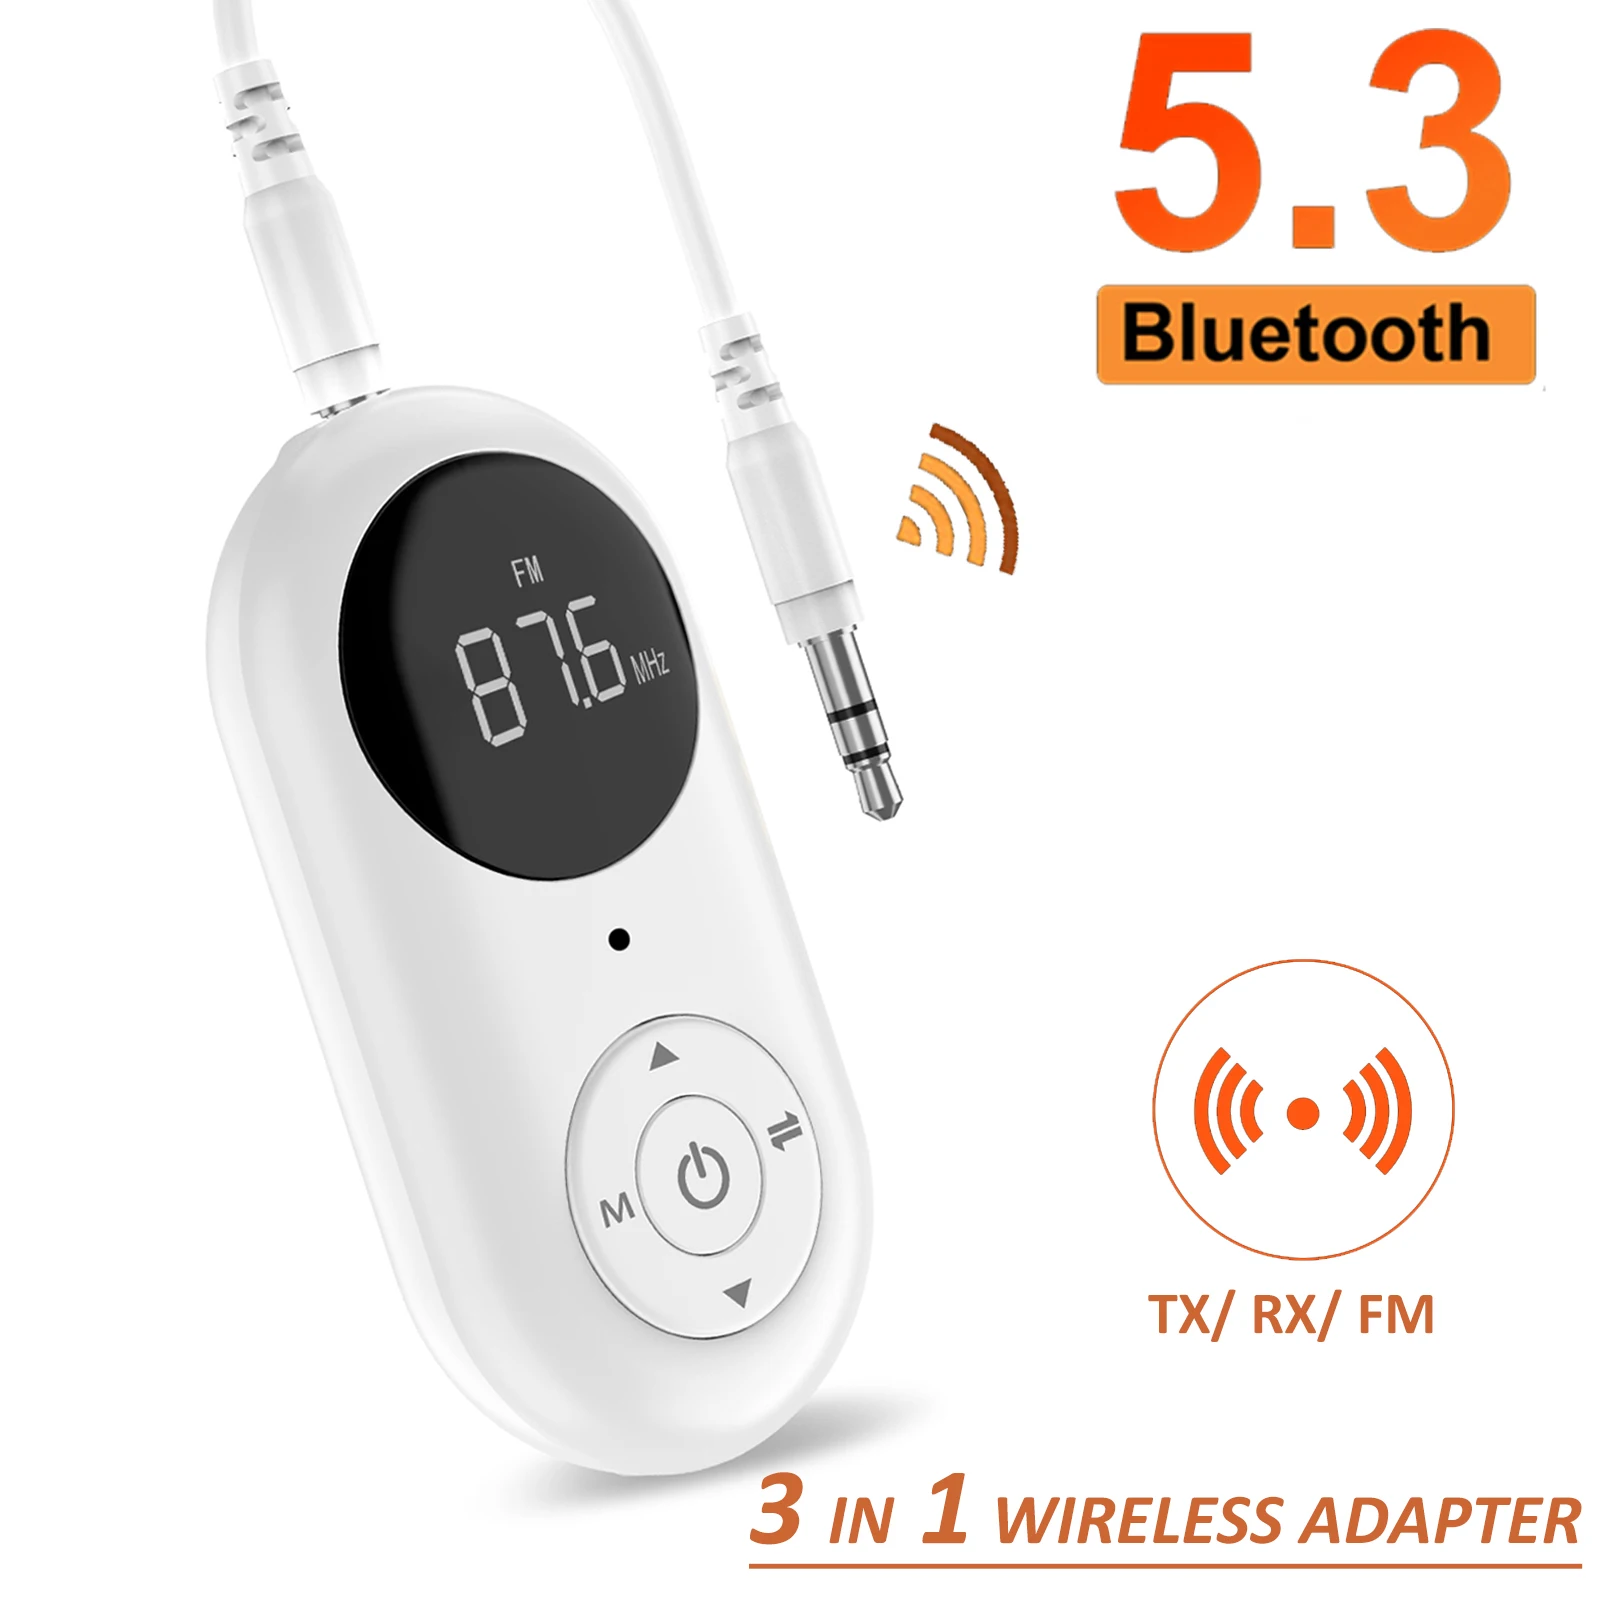  светодиодный цифровой дисплей Bluetooth 5.3 Приемник Передатчик Адаптер 3,5 мм AUX MP3 Плеер HIFI Аудиоадаптер для ПК ТВ Авто Динамик Дом